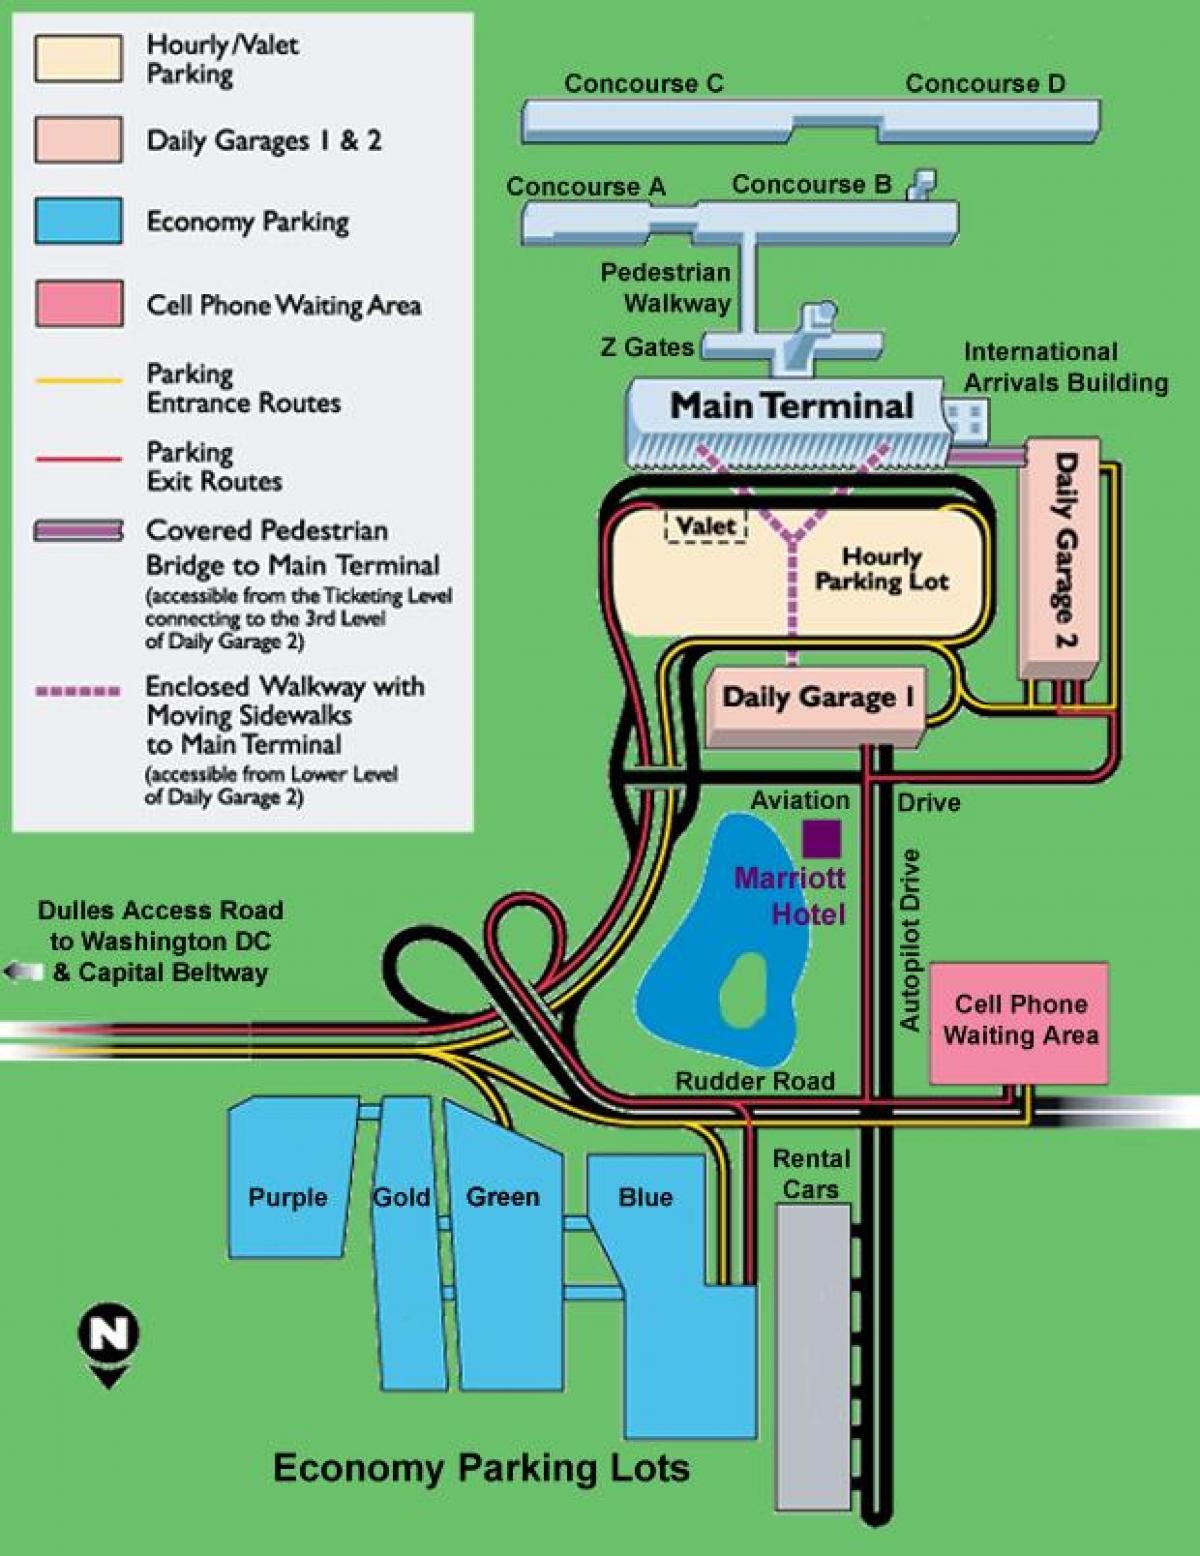 ڈلاس ائرپورٹ پارکنگ کا نقشہ